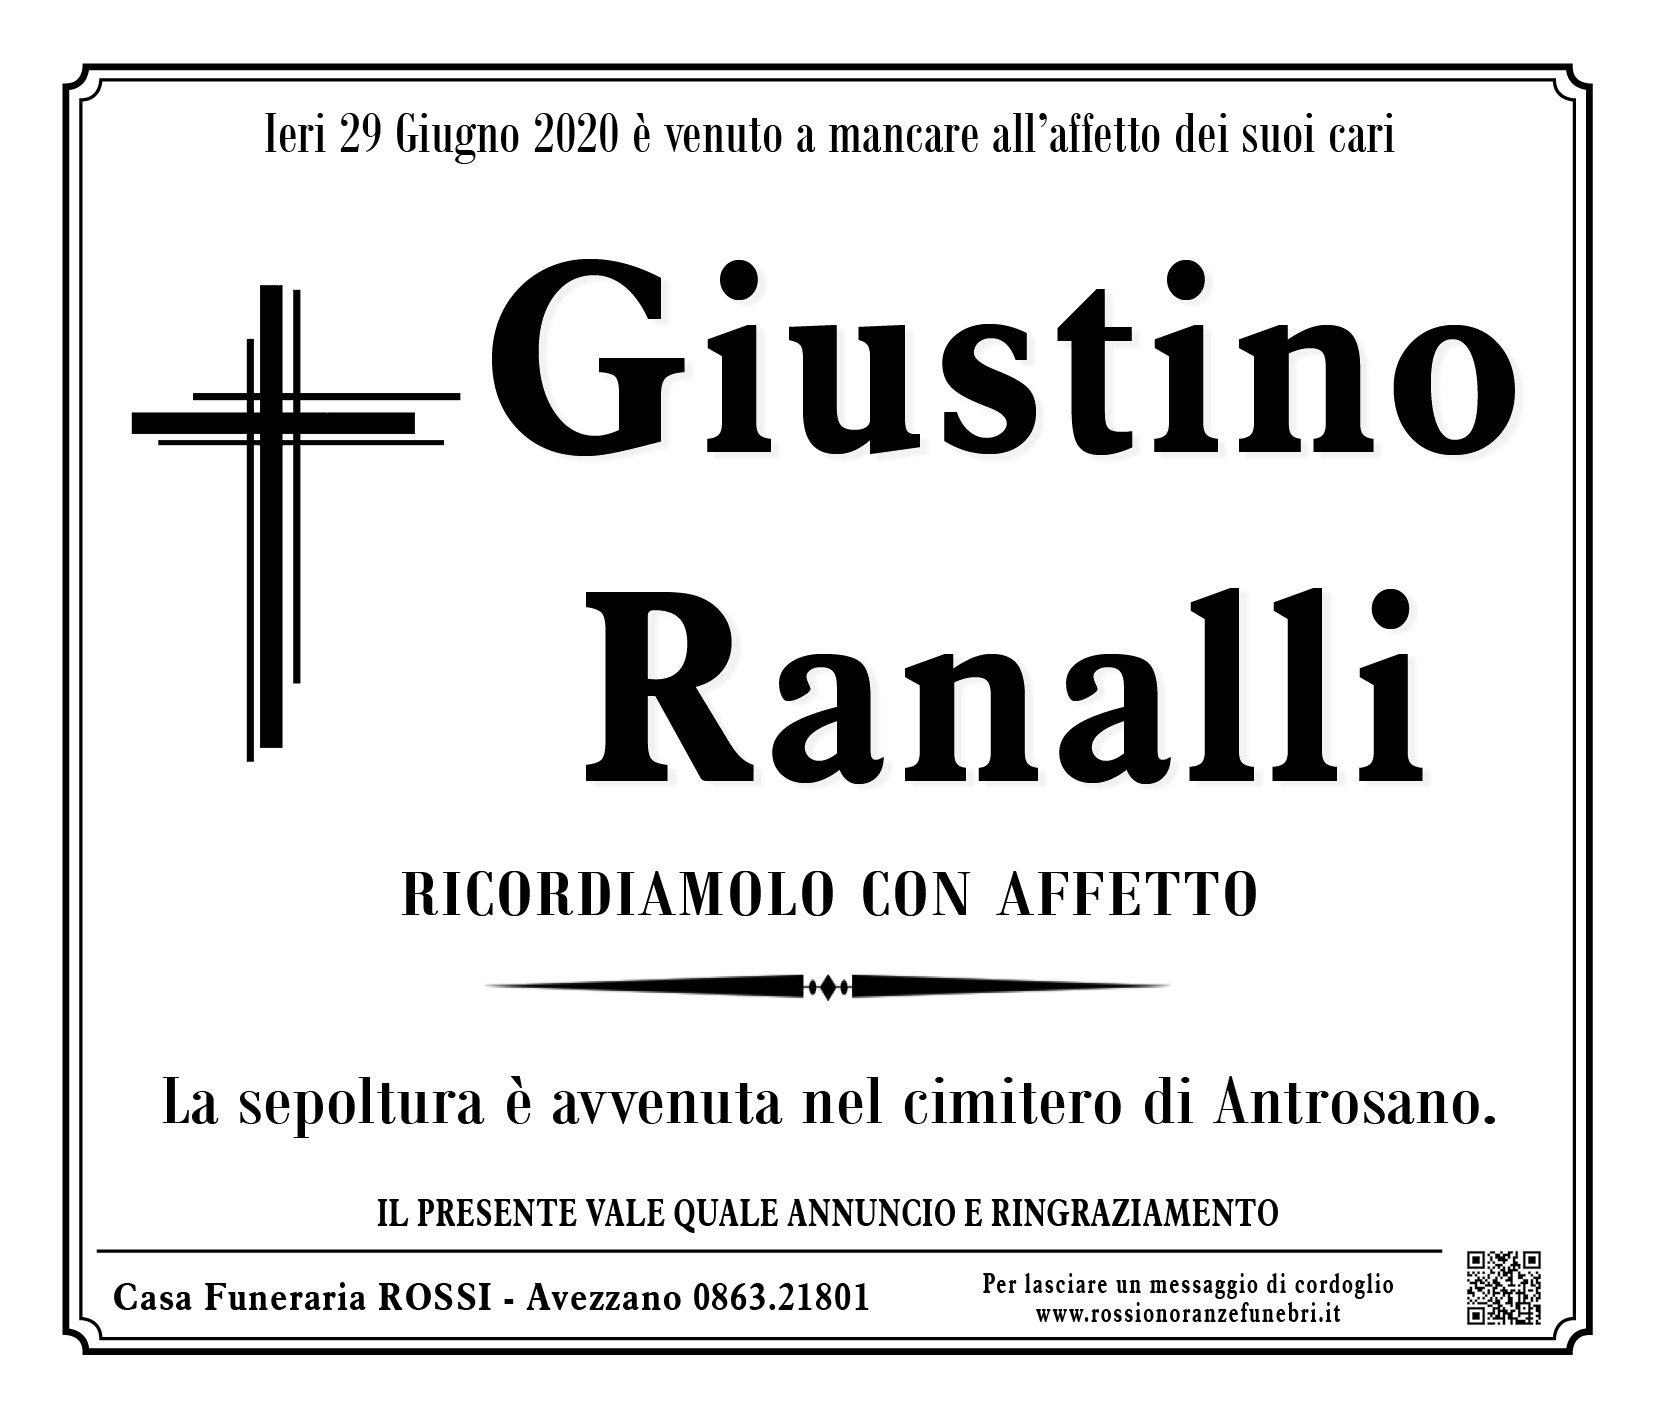 Giustino Ranalli